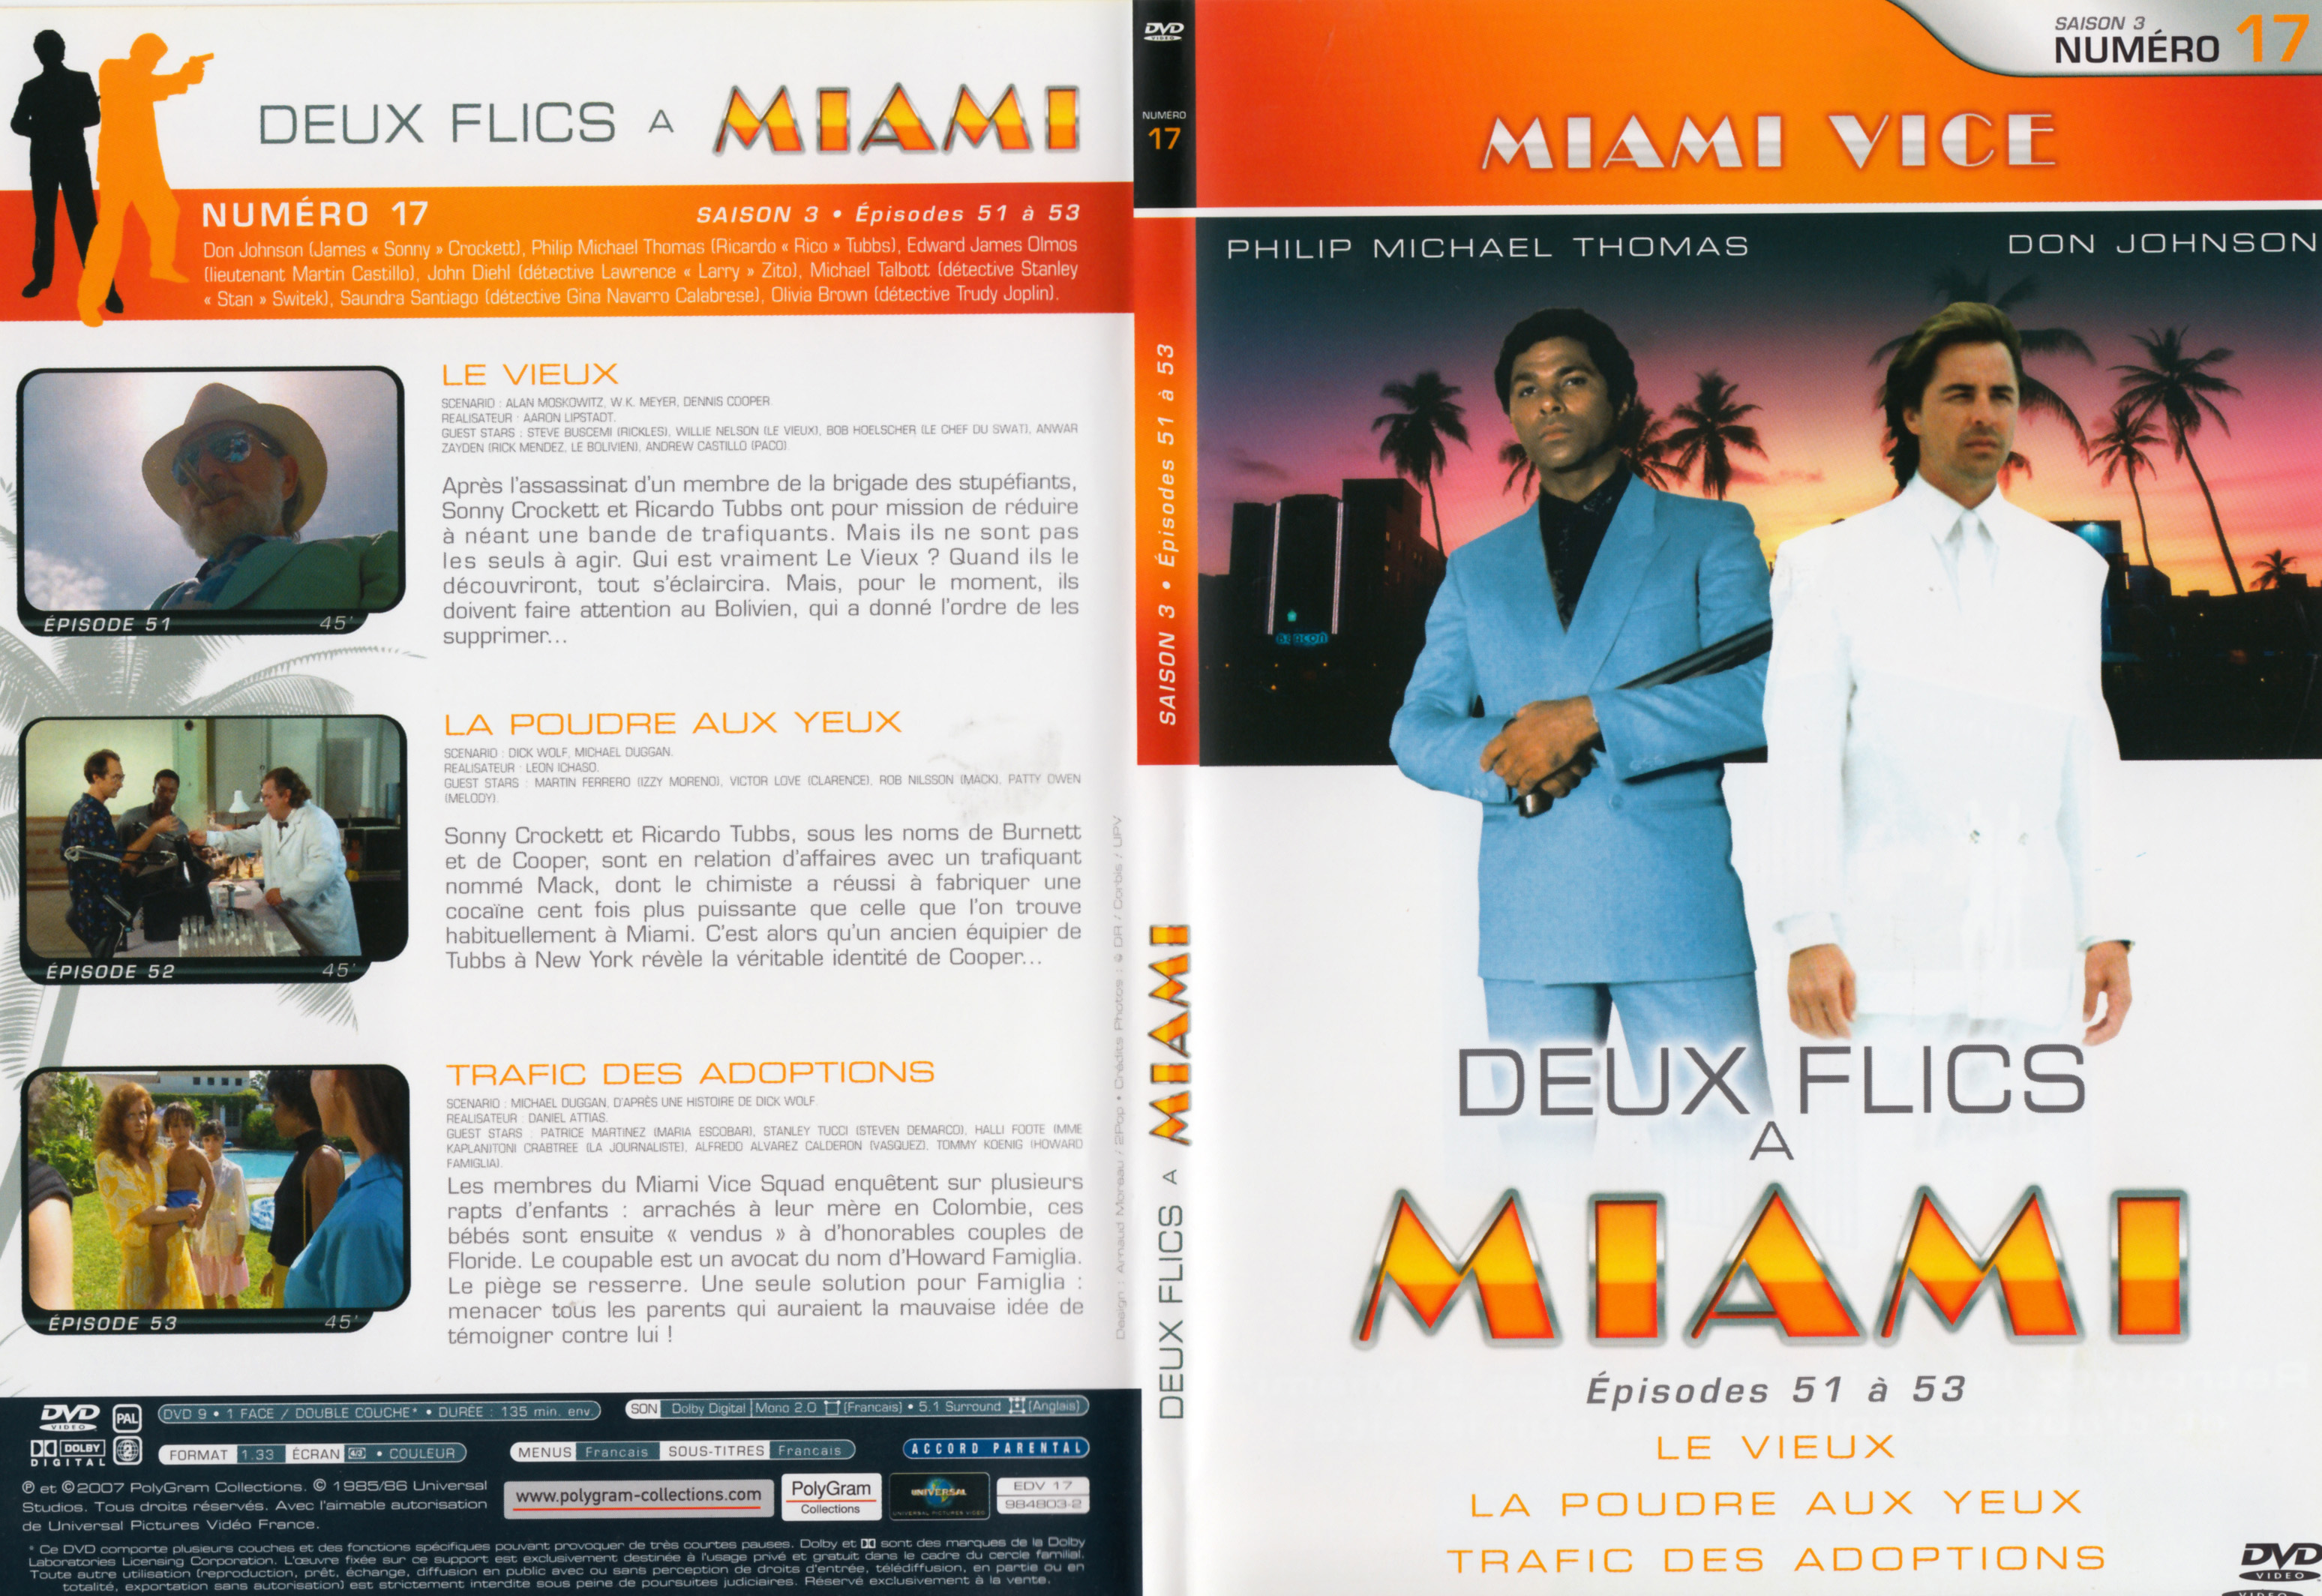 Jaquette DVD Deux flics  Miami Saison 3 vol 17